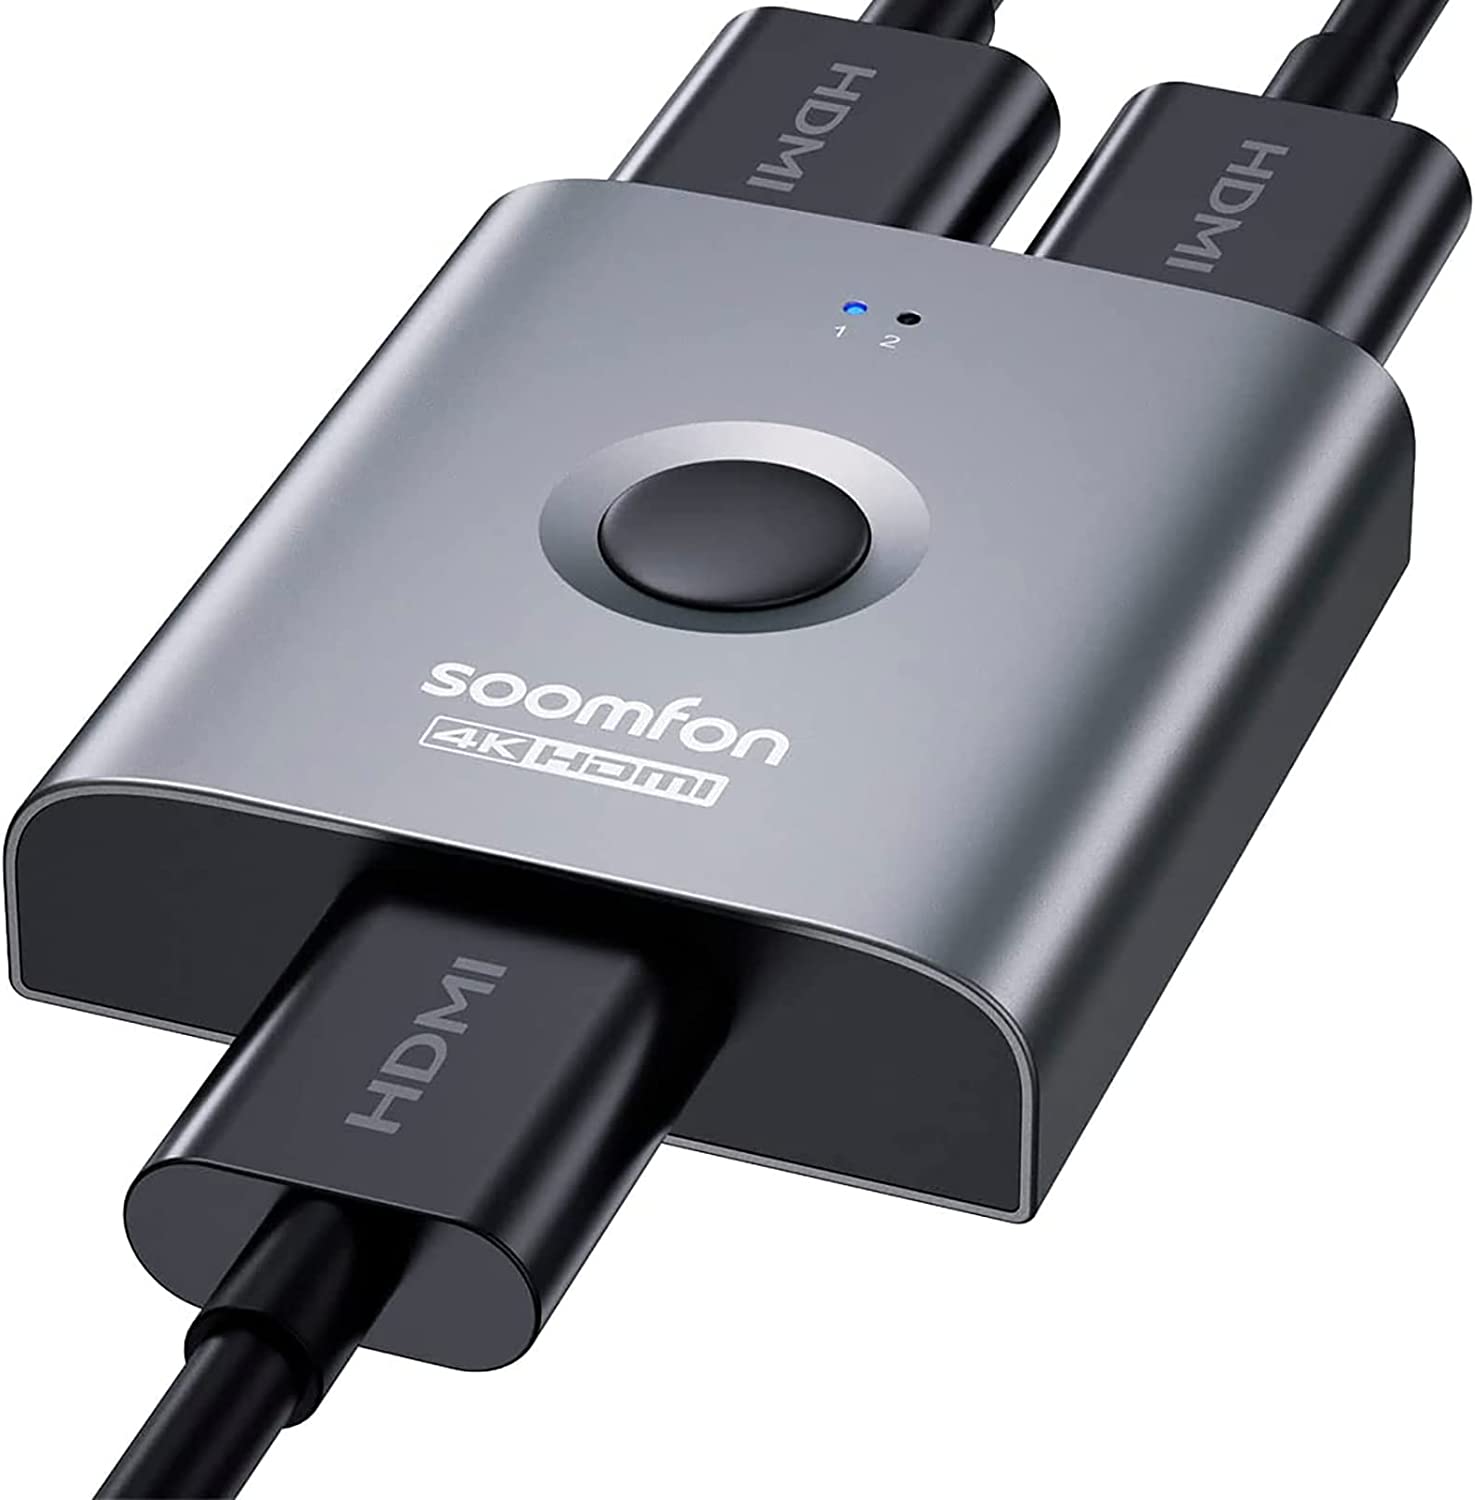 Comprar Ladron conmutador HDMI de 3 puertos - 3 port switch